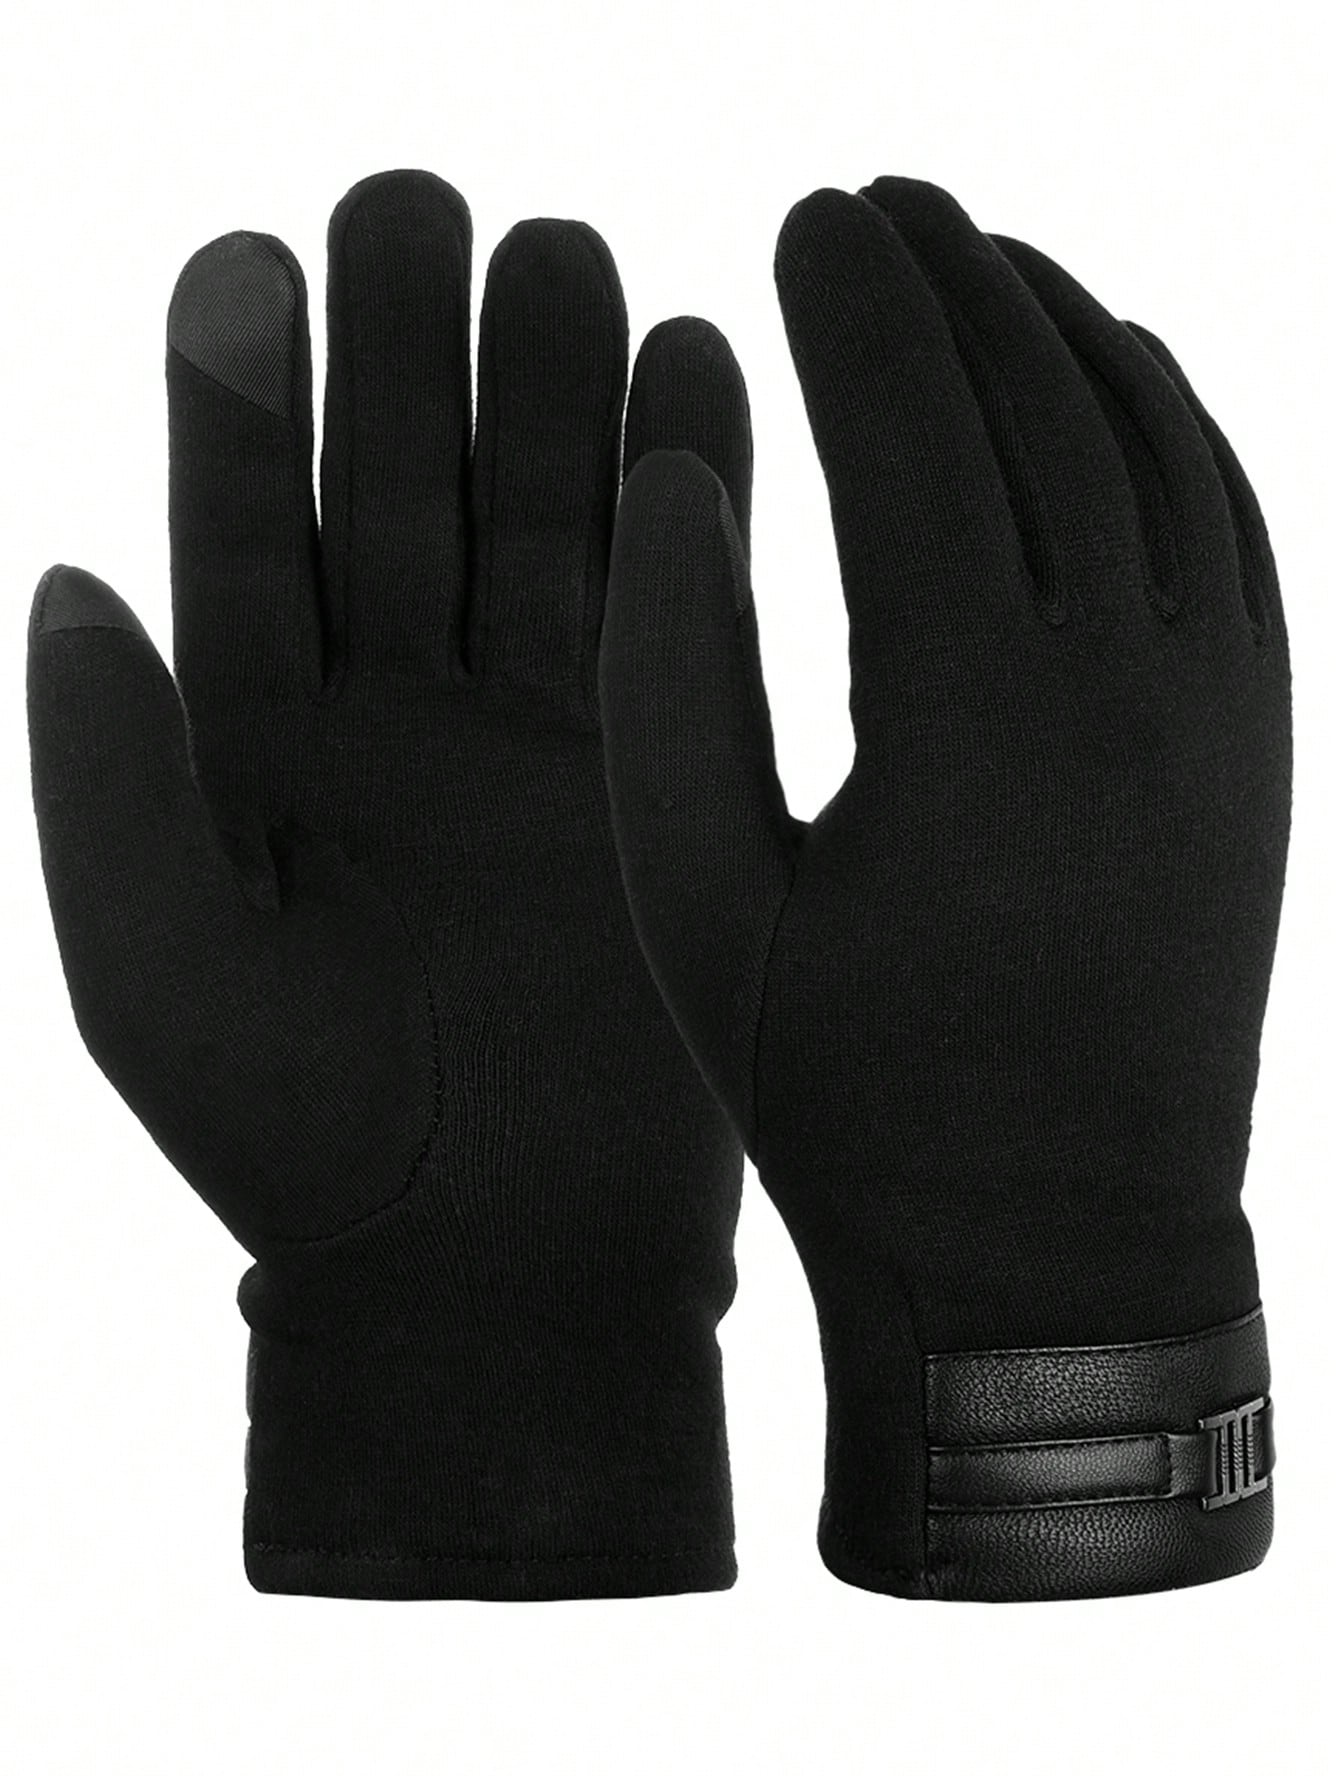 ATARNI Зимние теплые перчатки Перчатки для сенсорного экрана Повседневные перчатки для мужчин, черный женские повседневные черные перчатки модные зимние теплые перчатки вязаные длинные рукава перчатки без пальцев теплые мягкие женские ва